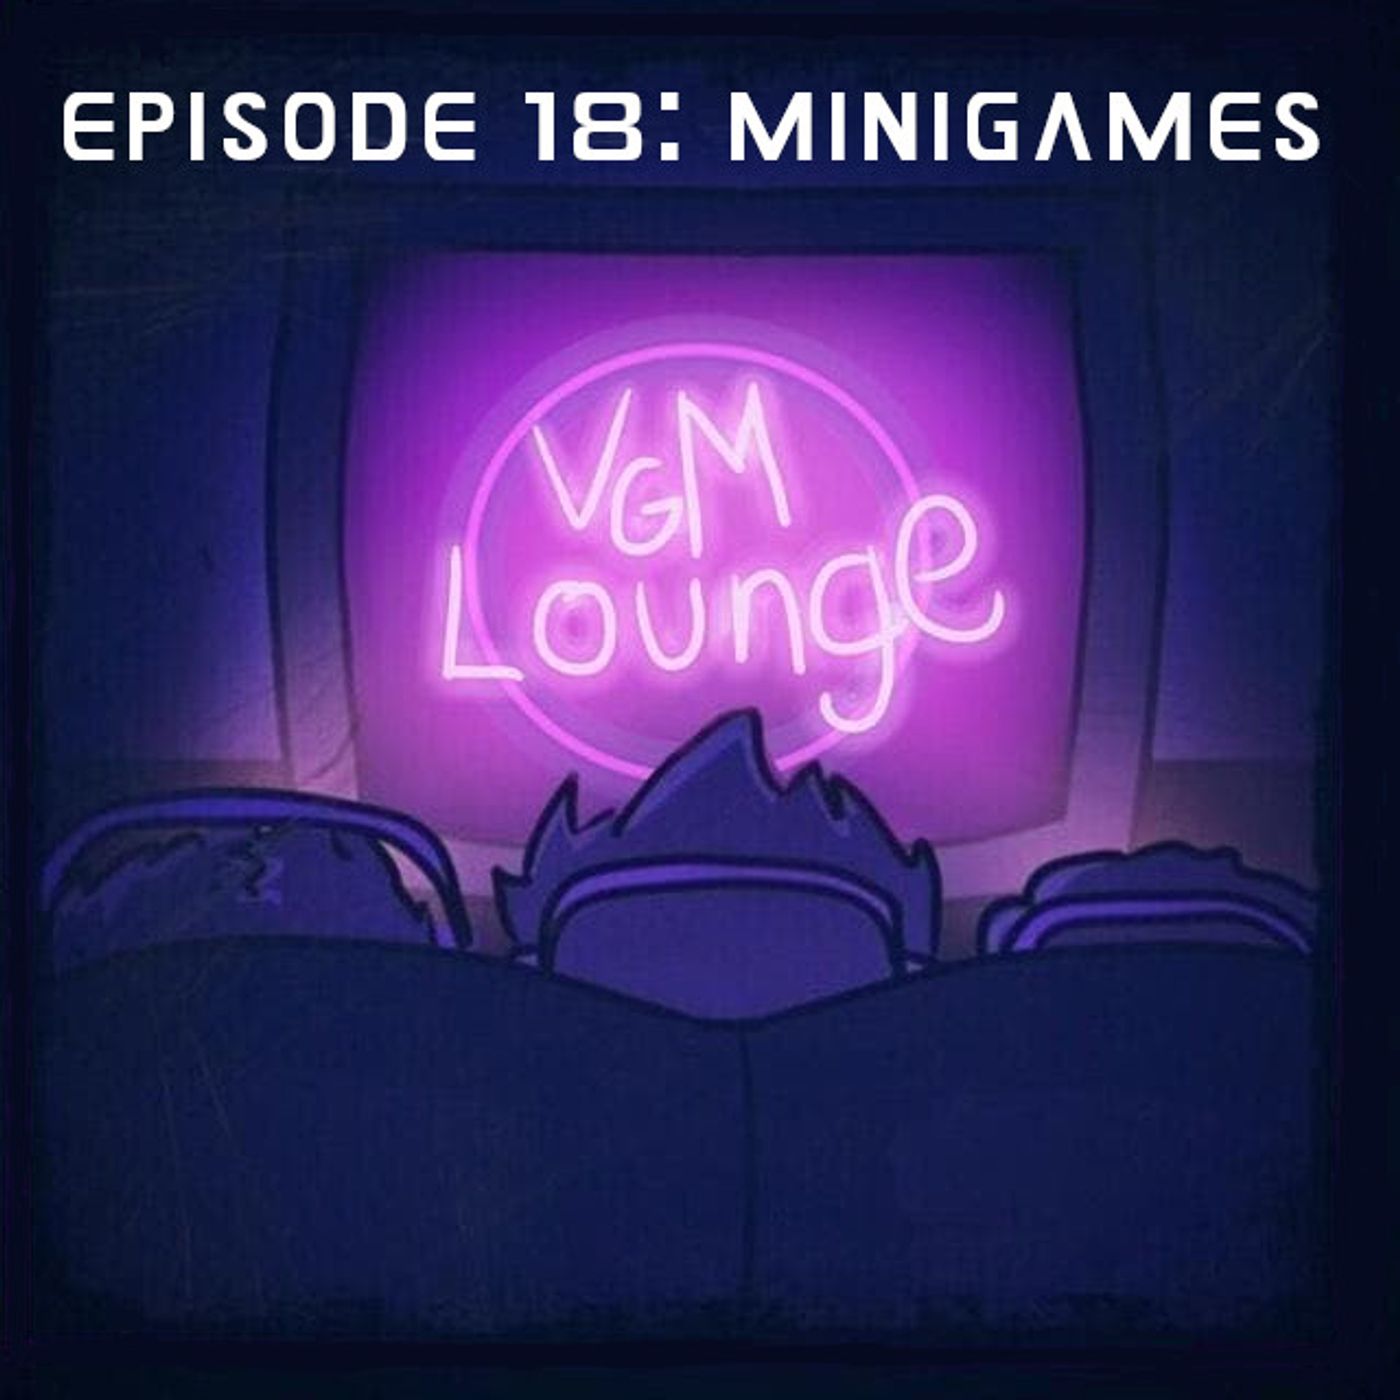 Minigames - Episode 18